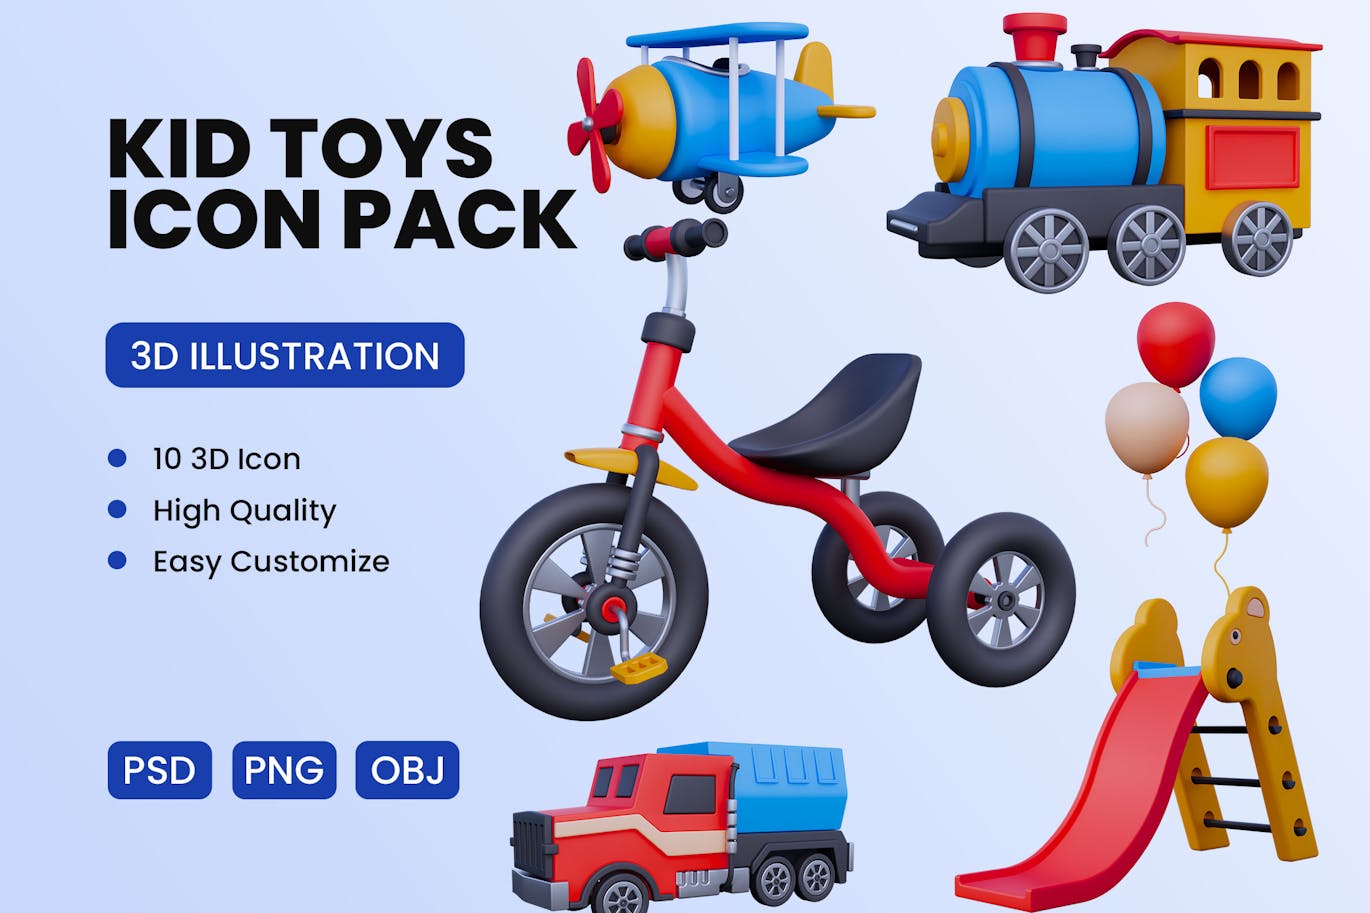 儿童玩具 3D 图标 (PNG,PSD,OBJ,FBX)